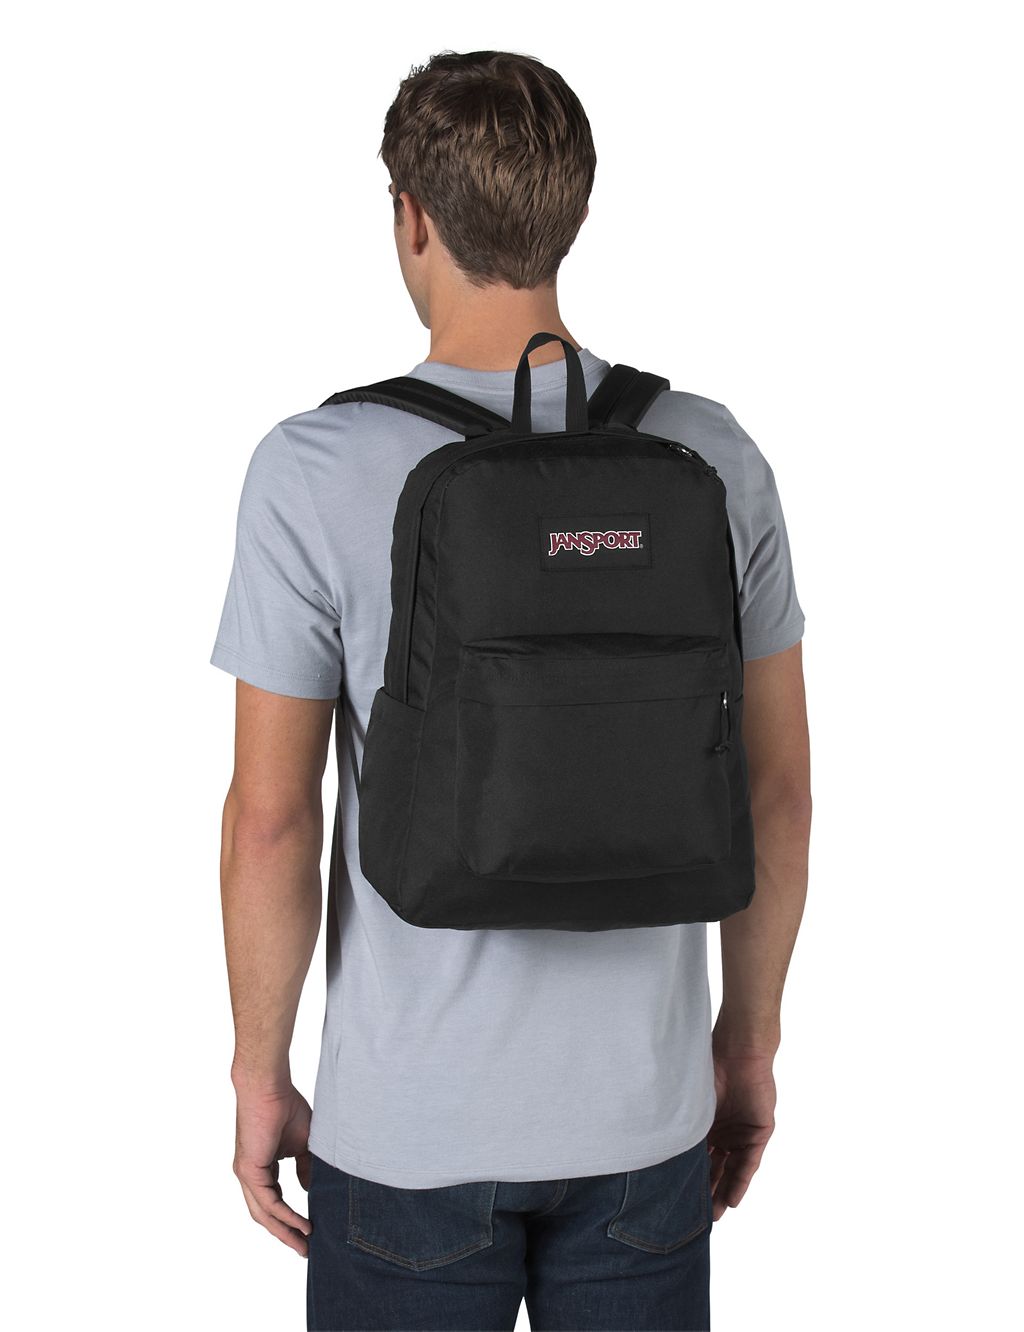 SuperBreak Plus Backpack 2 of 8